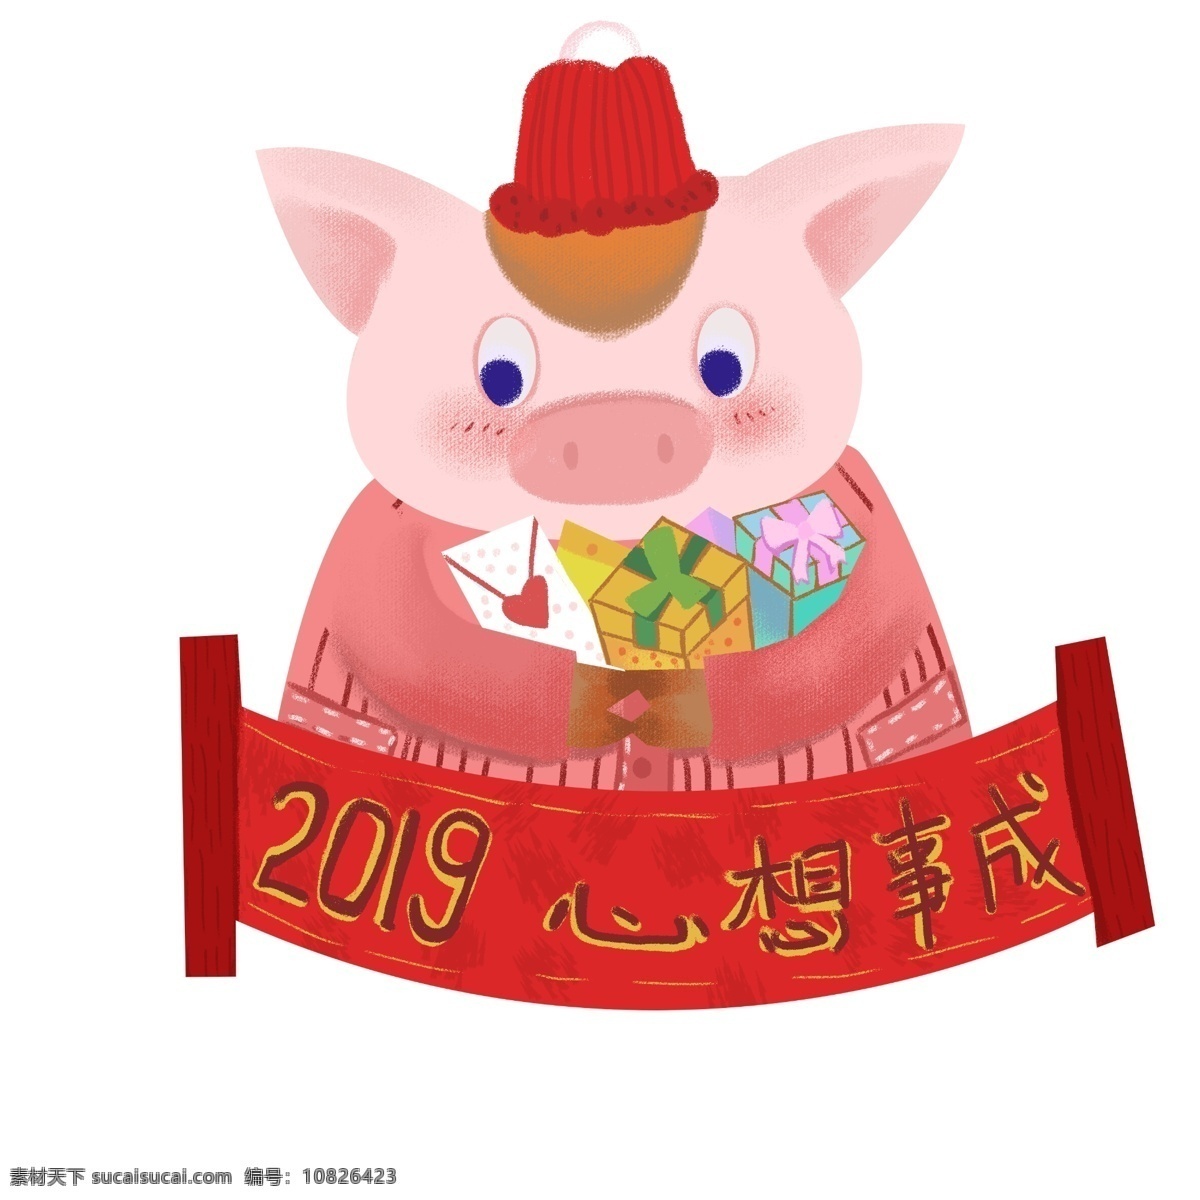 2019 年 春节 猪年 中国风 新年快乐 万事如意 恭喜发财 一帆风顺 新春 可爱猪 财神猪 心想事成 红红火火